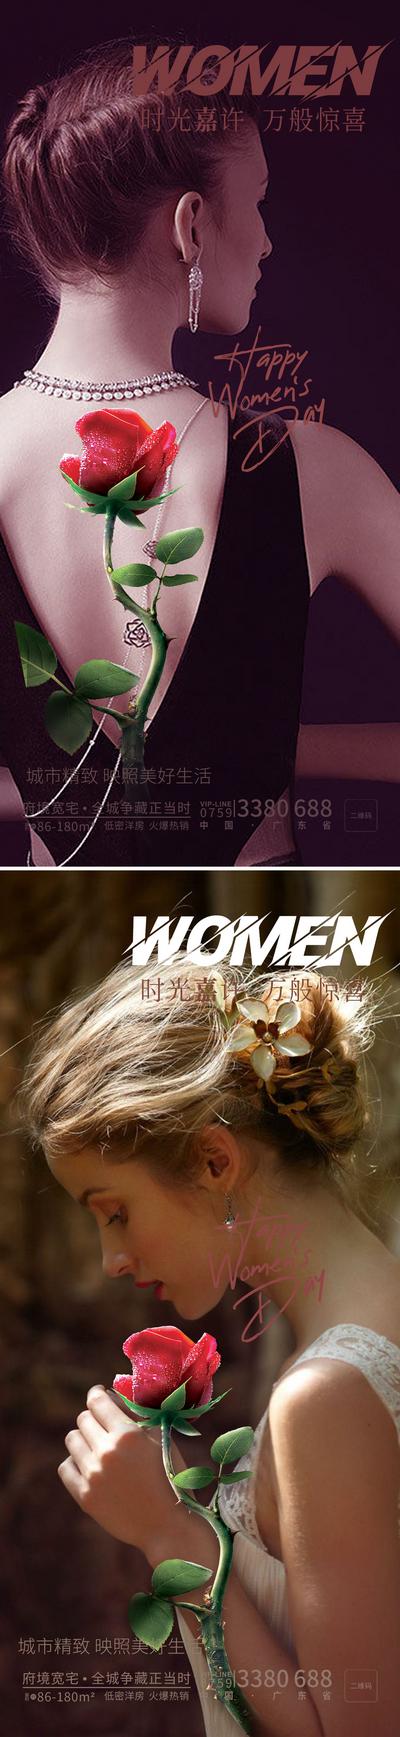 南门网 海报 公历节日 38 妇女节 质感 玫瑰 美女 背影 女神节 女王节